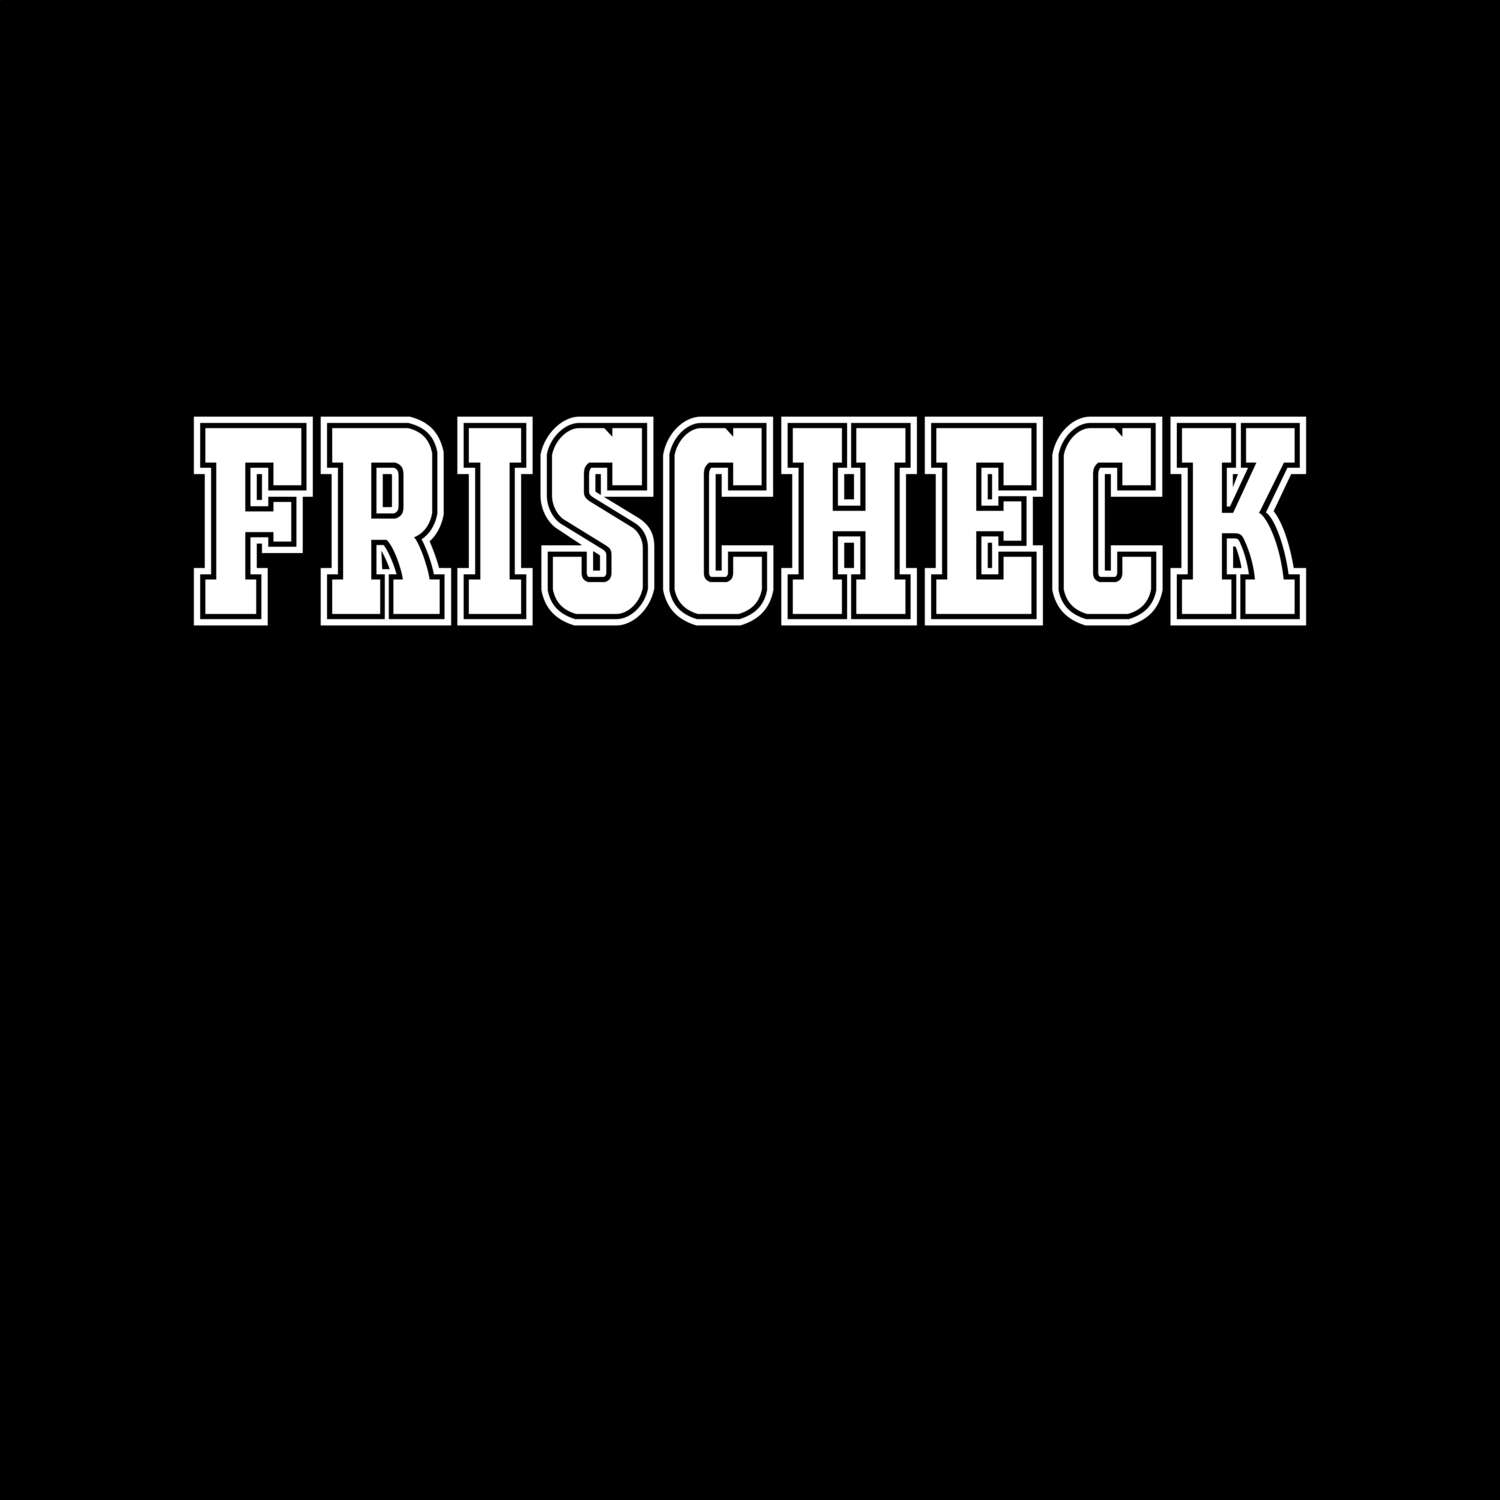 Frischeck T-Shirt »Classic«